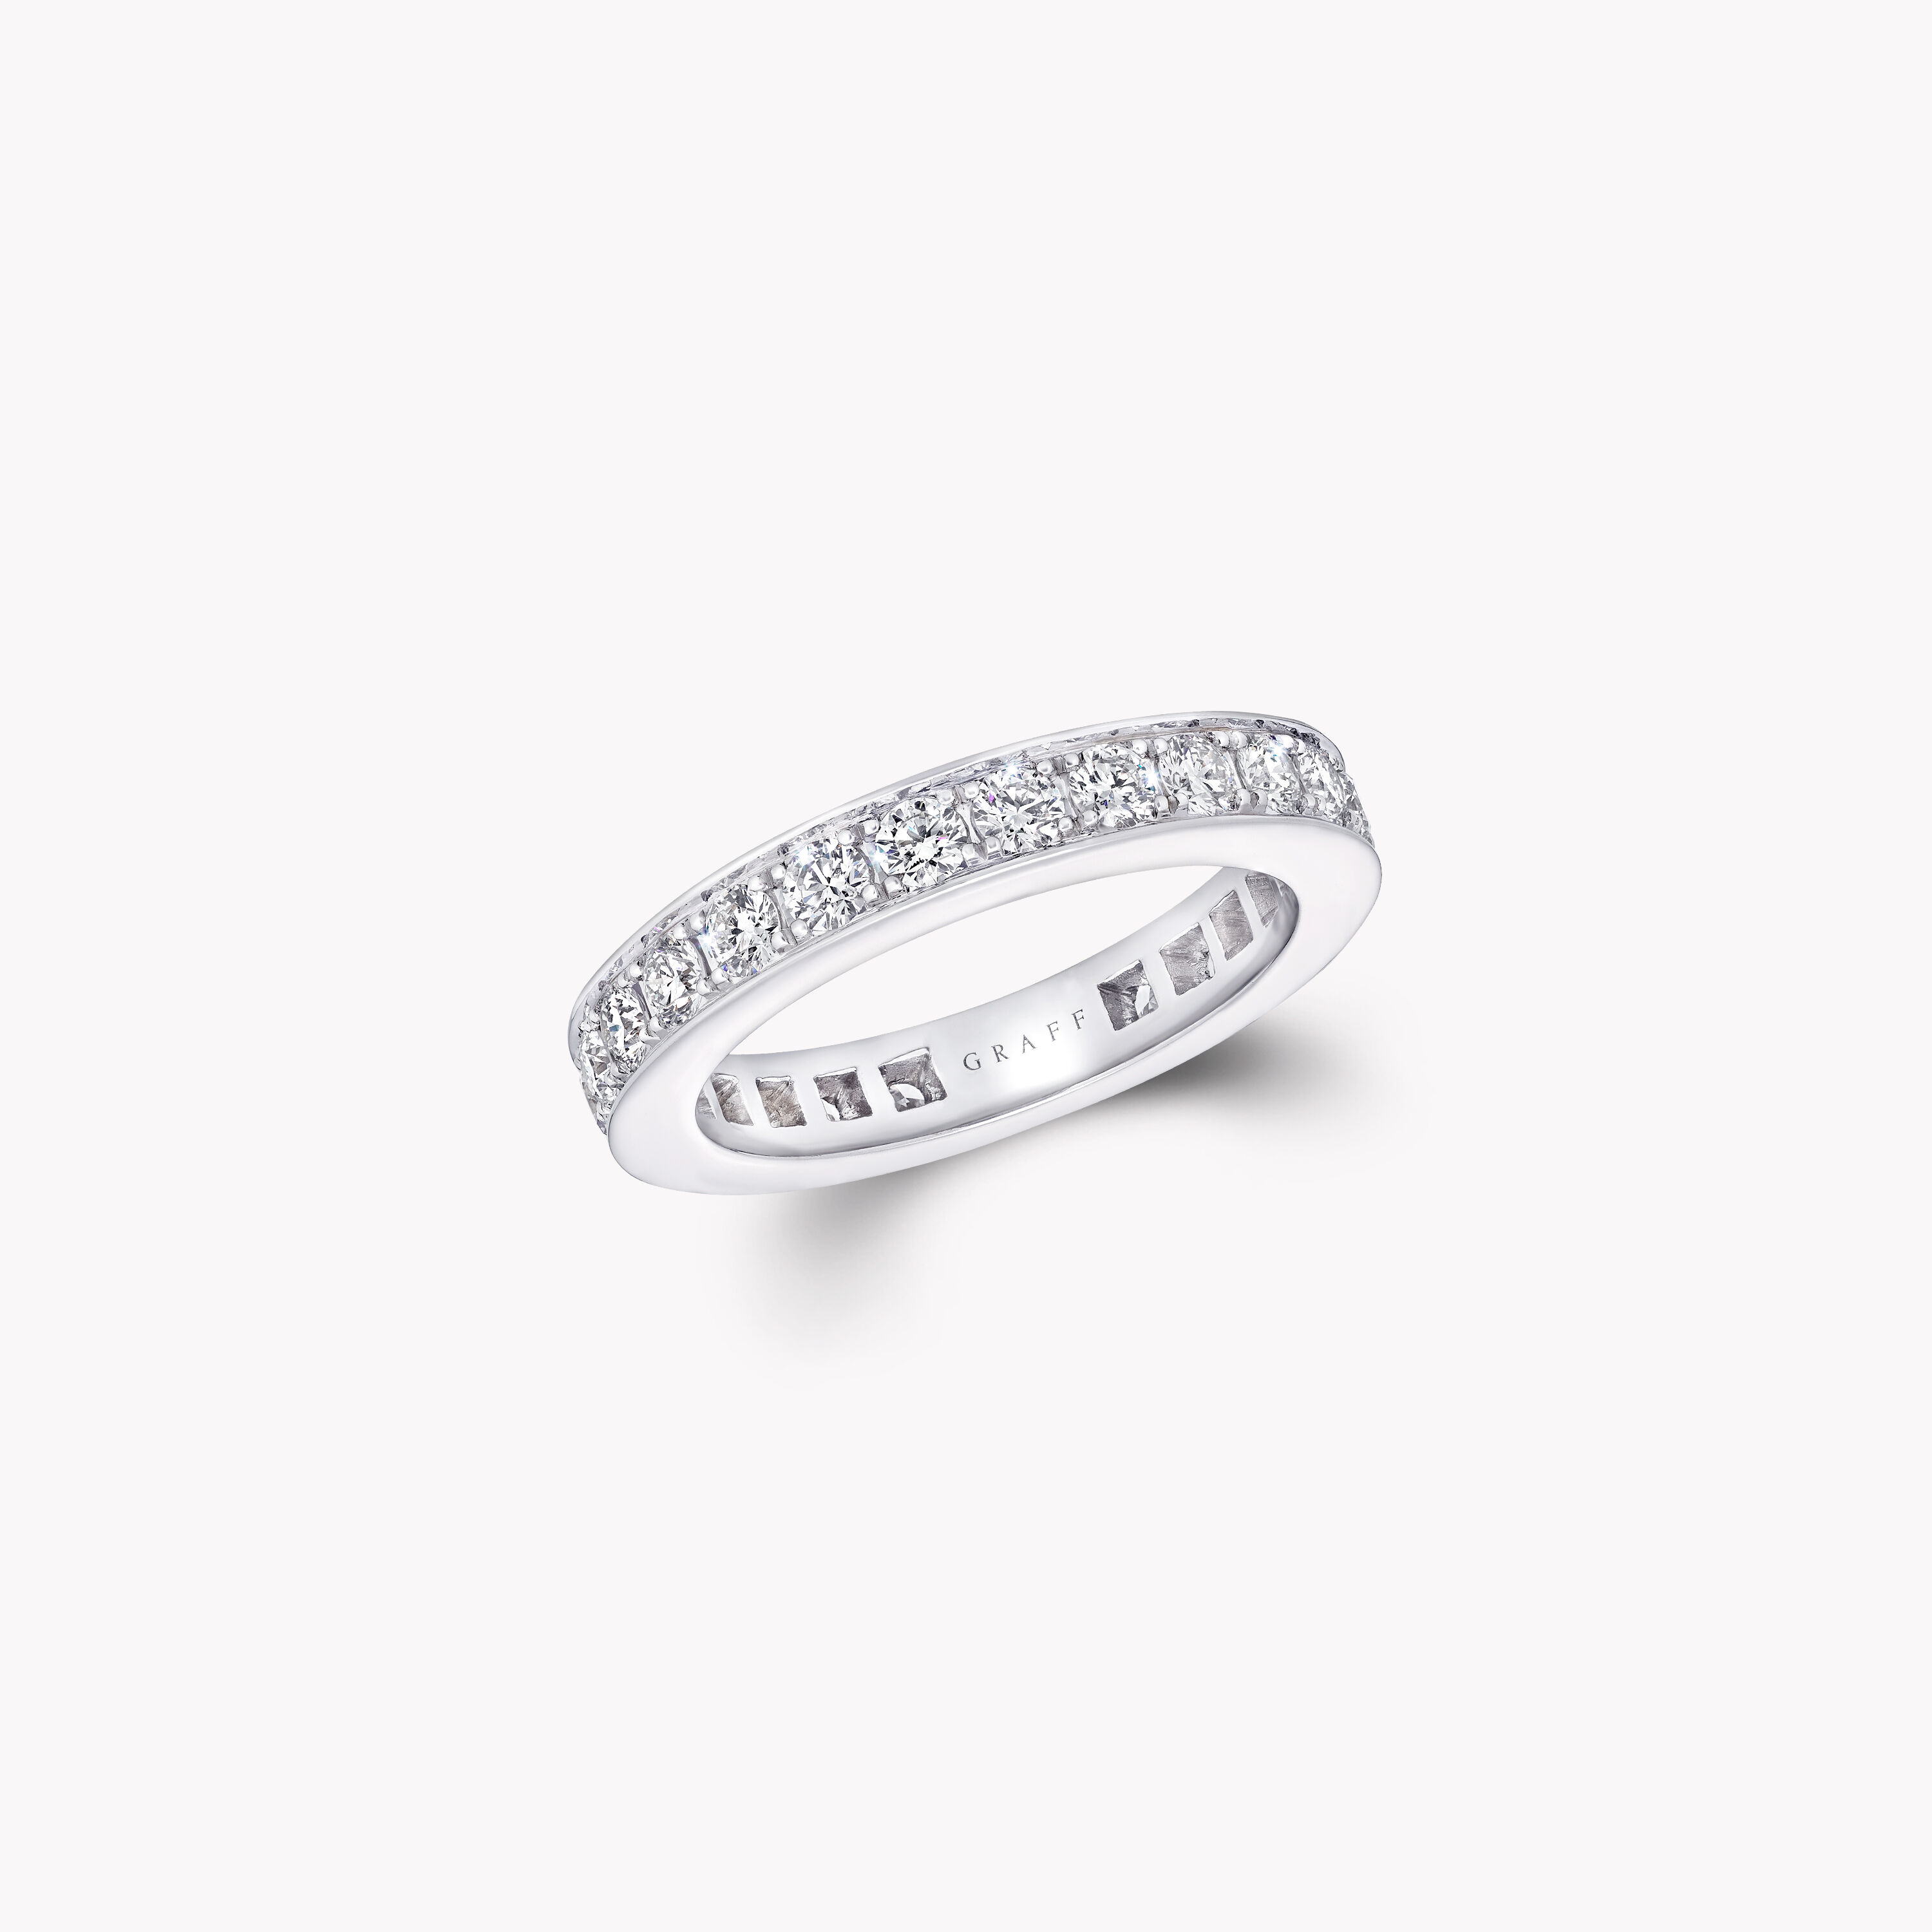 Paris Hilton's “Paris” Engagement Ring